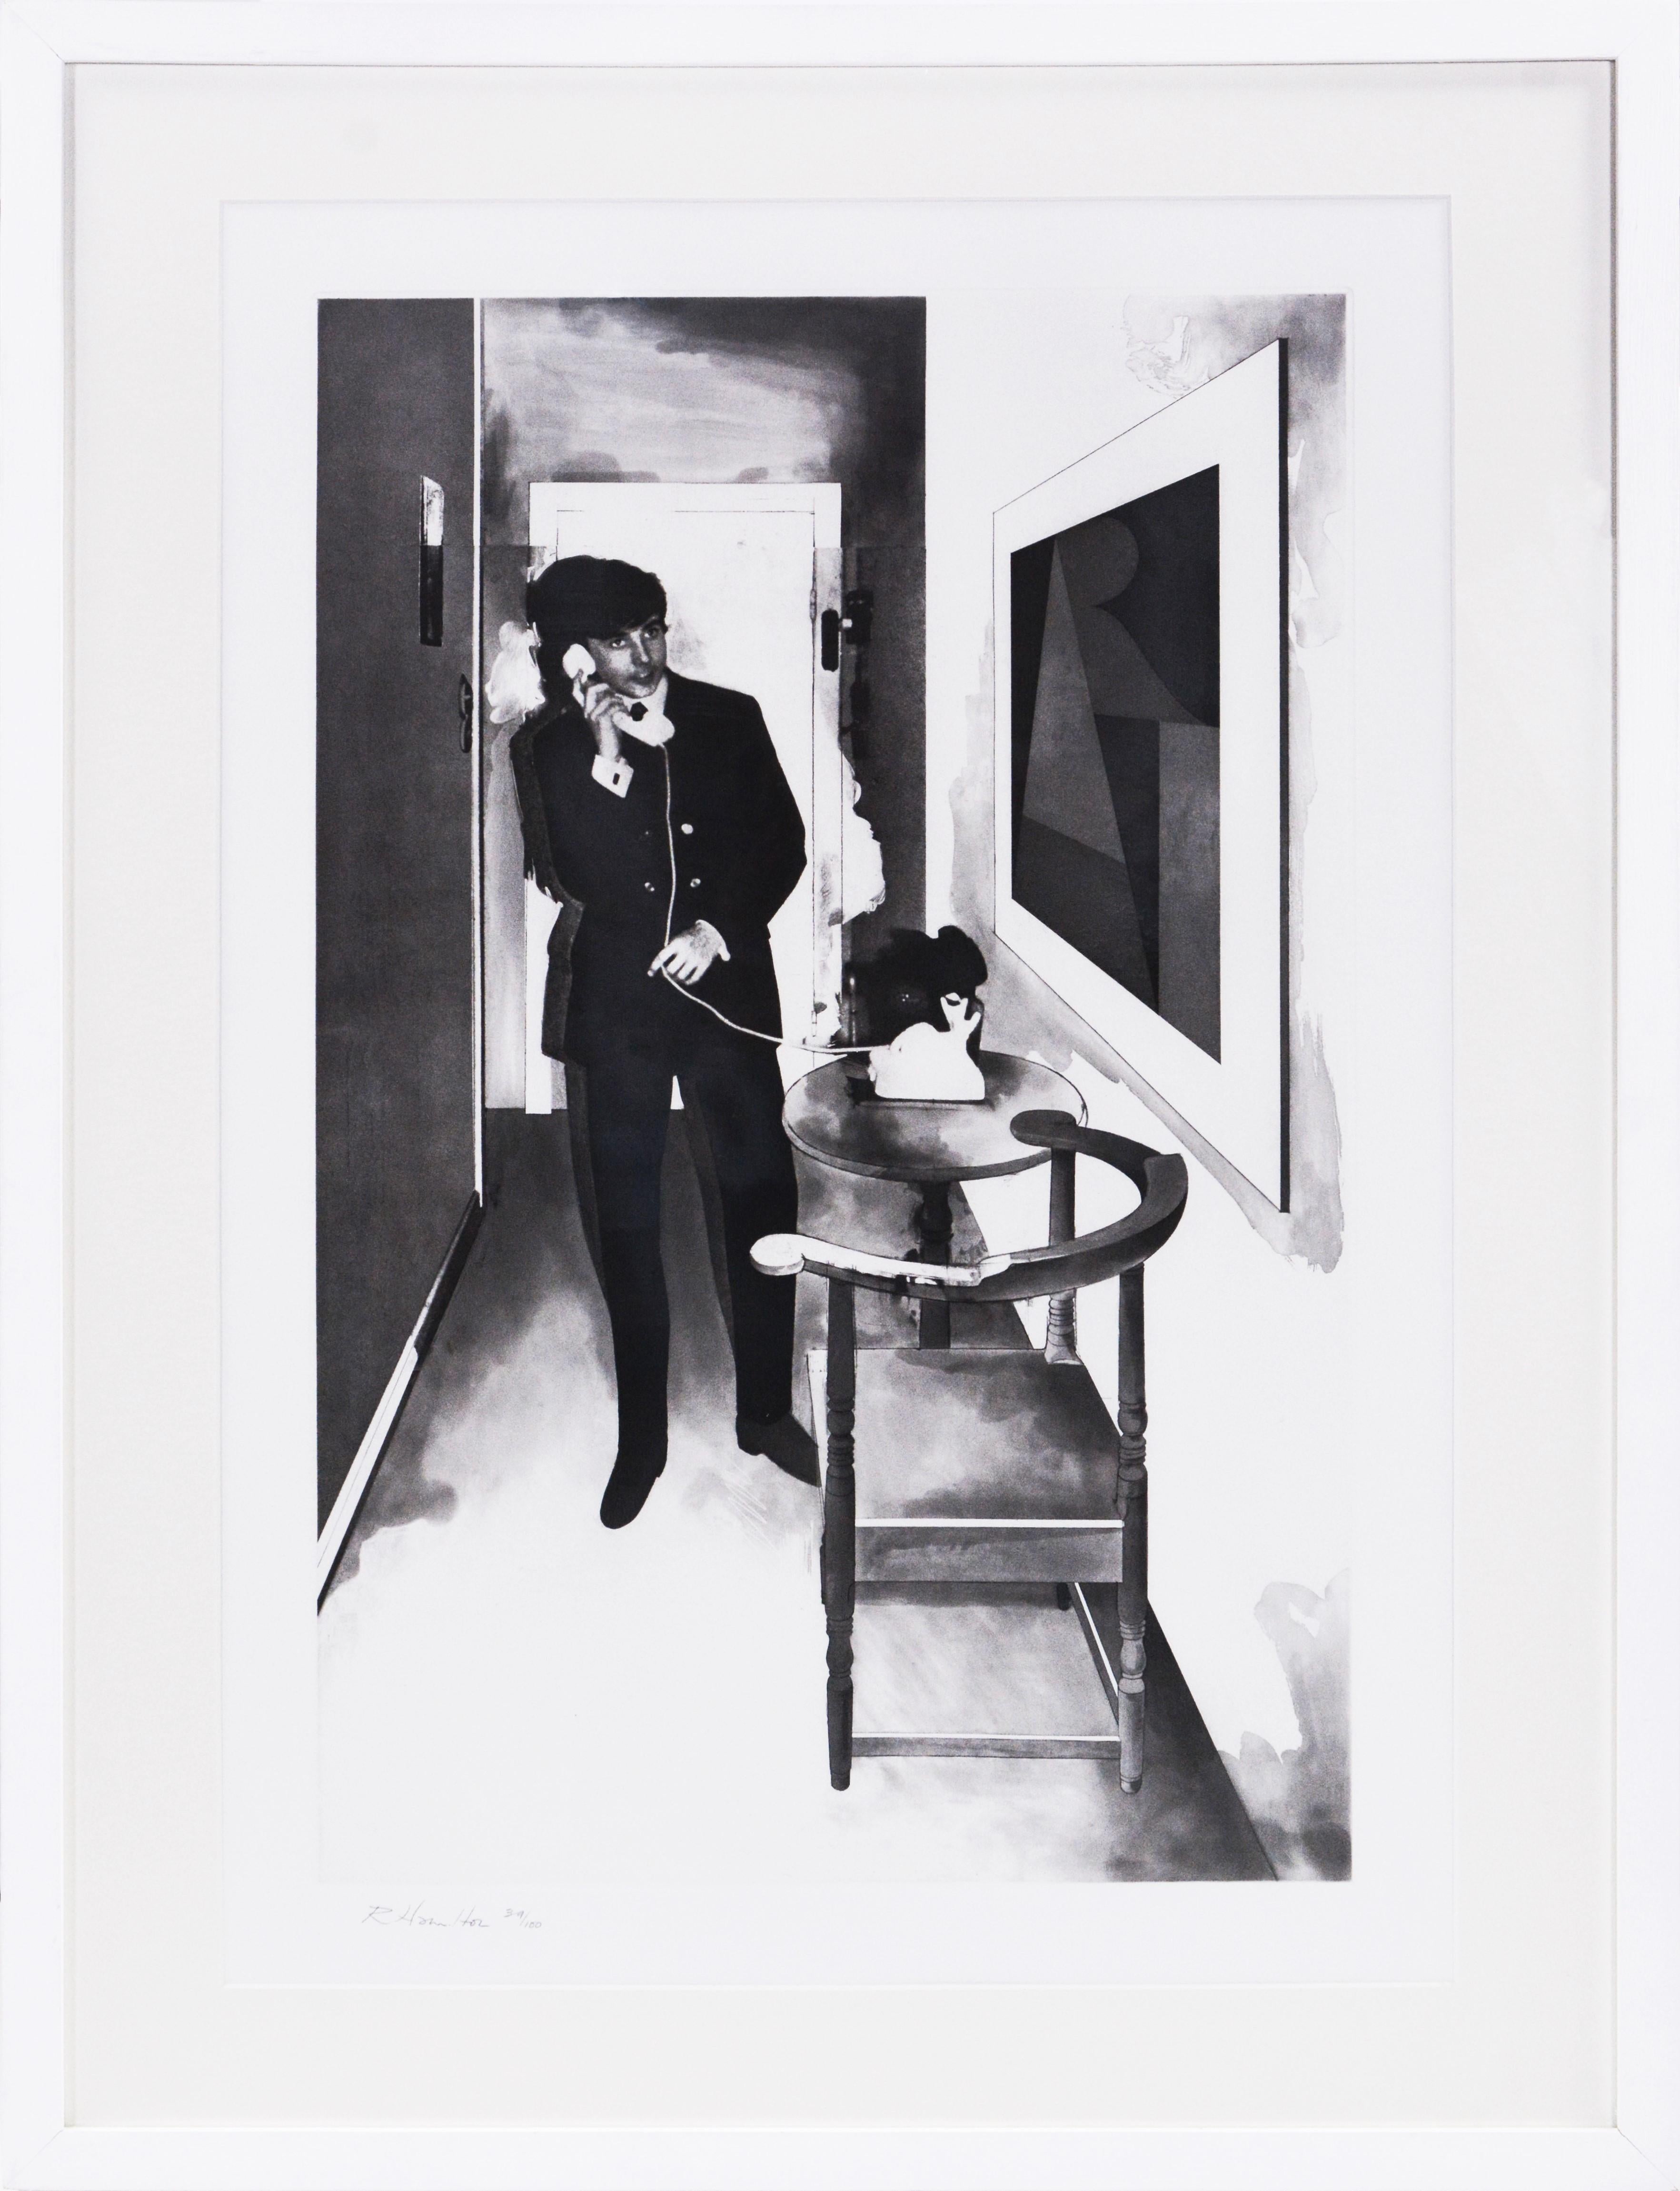 Eau-forte et aquatinte, 1980, sur Rives BFK, signée et numérotée de l'édition de 100, imprimée au Studio Crommelynck, Paris, publiée par Waddington Graphics, Londres, feuille 58,4×38,1cm.

Le titre est tiré d'une chanson des années 1960 par The